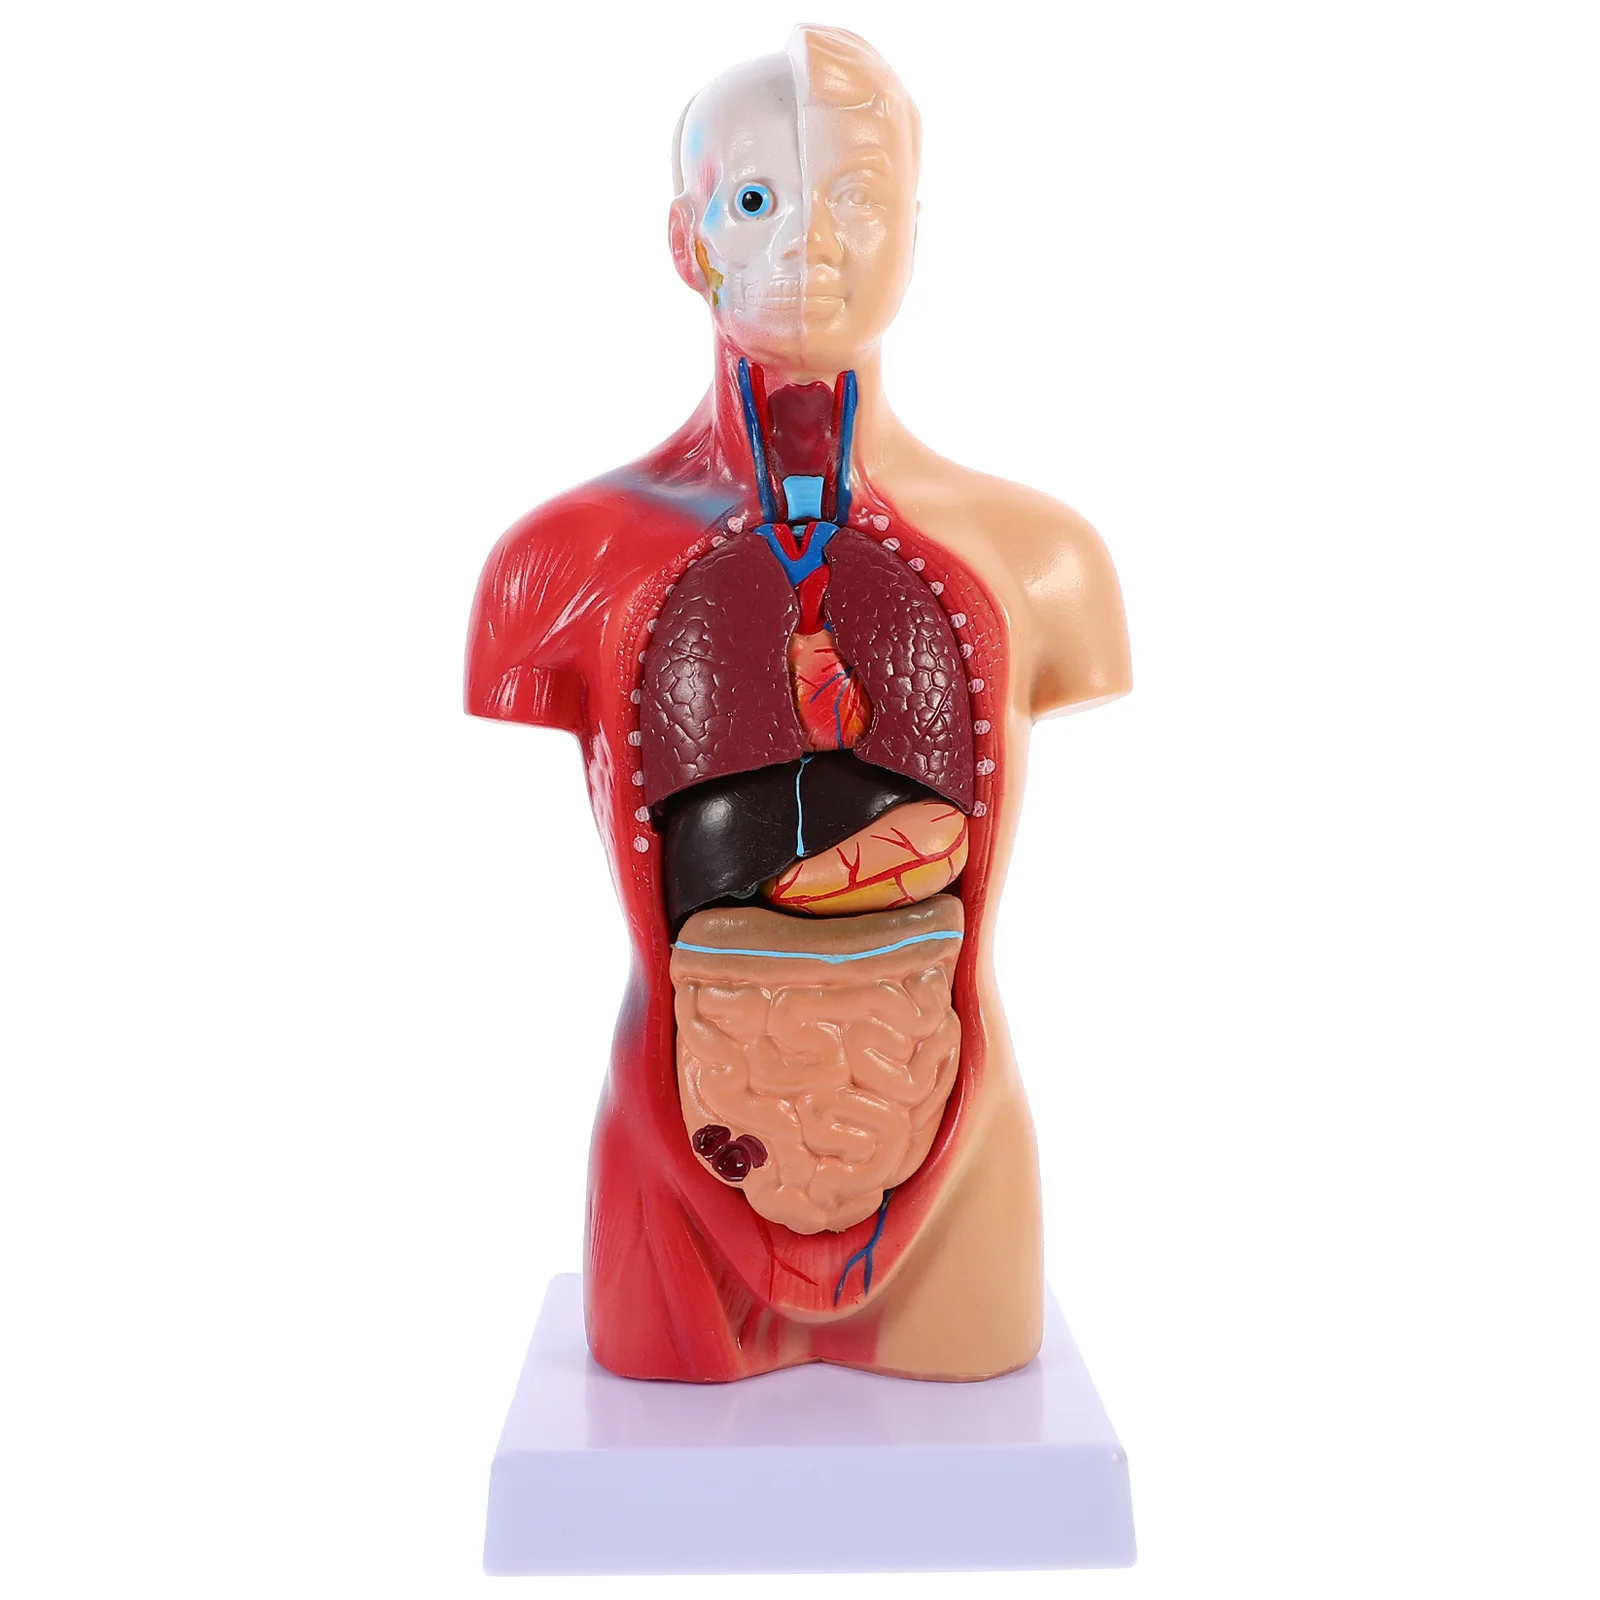 İnsan Torso Vücut Modeli Playset Öğretim Anatomi Organları Modeli Okul Eğitim aracı Çocuklar İnsan Vücudu Hemşirelik Torso Anatomik Görüntü 0